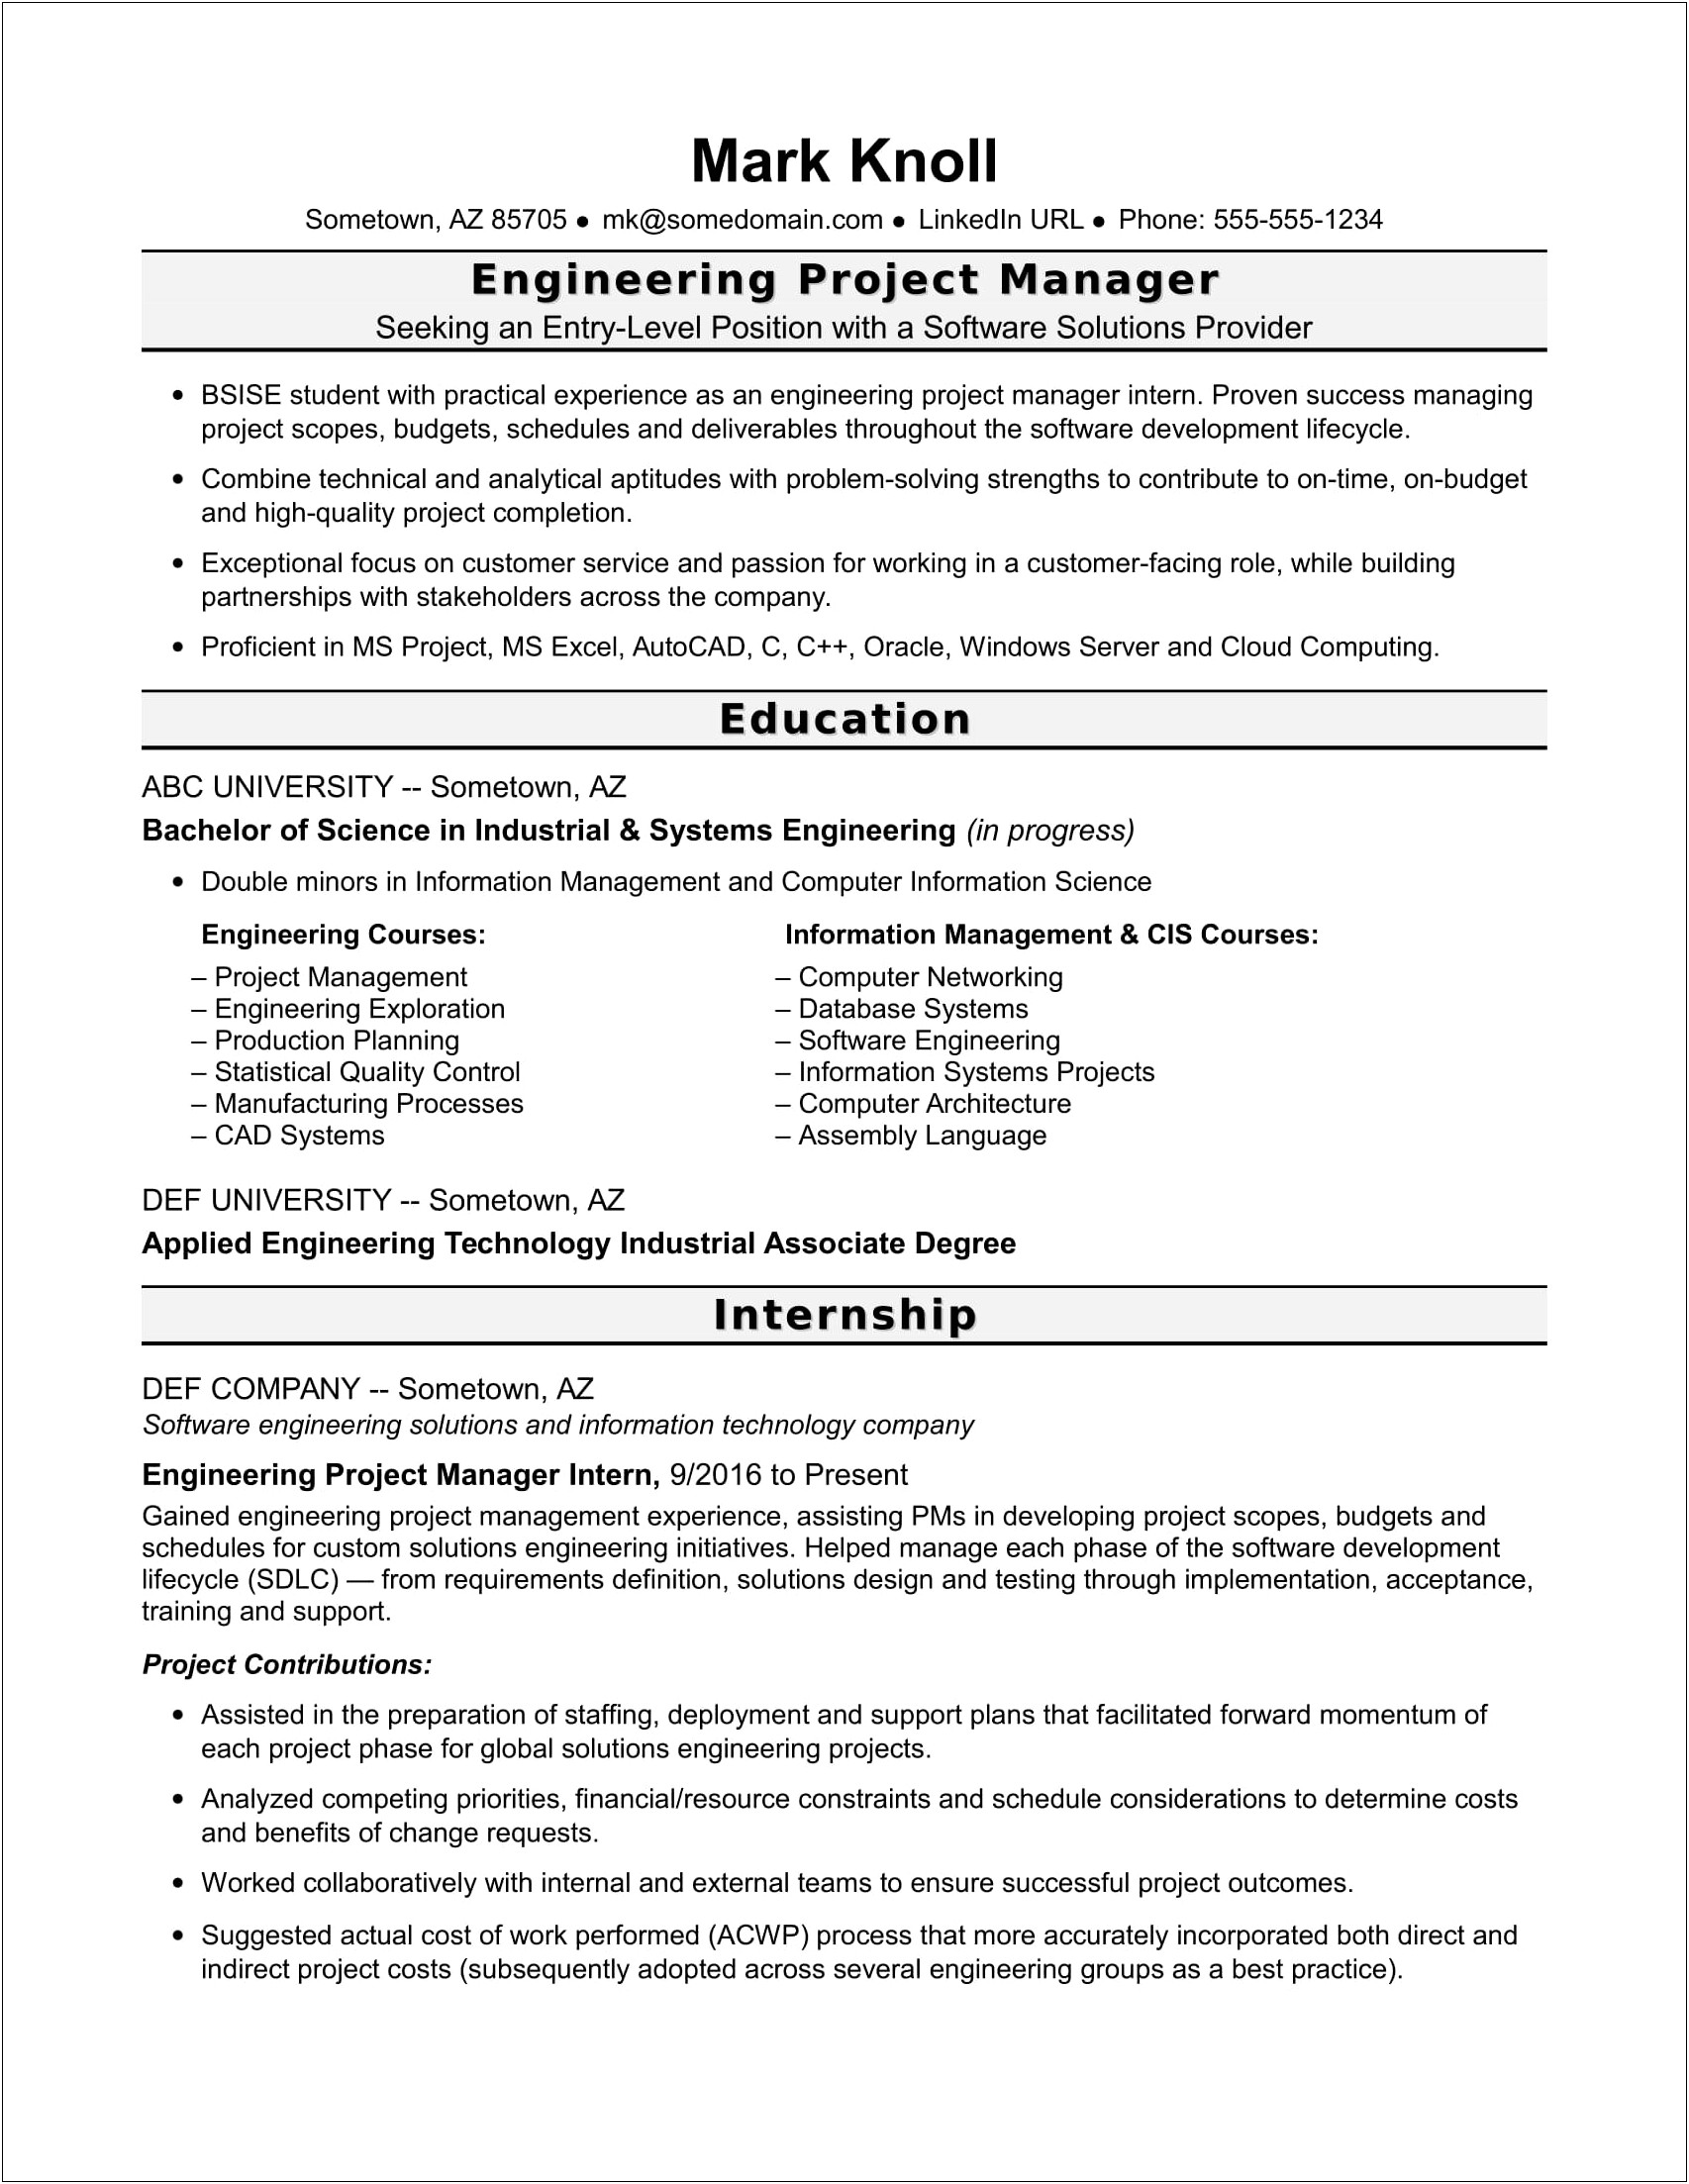 Sample Resume For Embedded Engineer Fresher